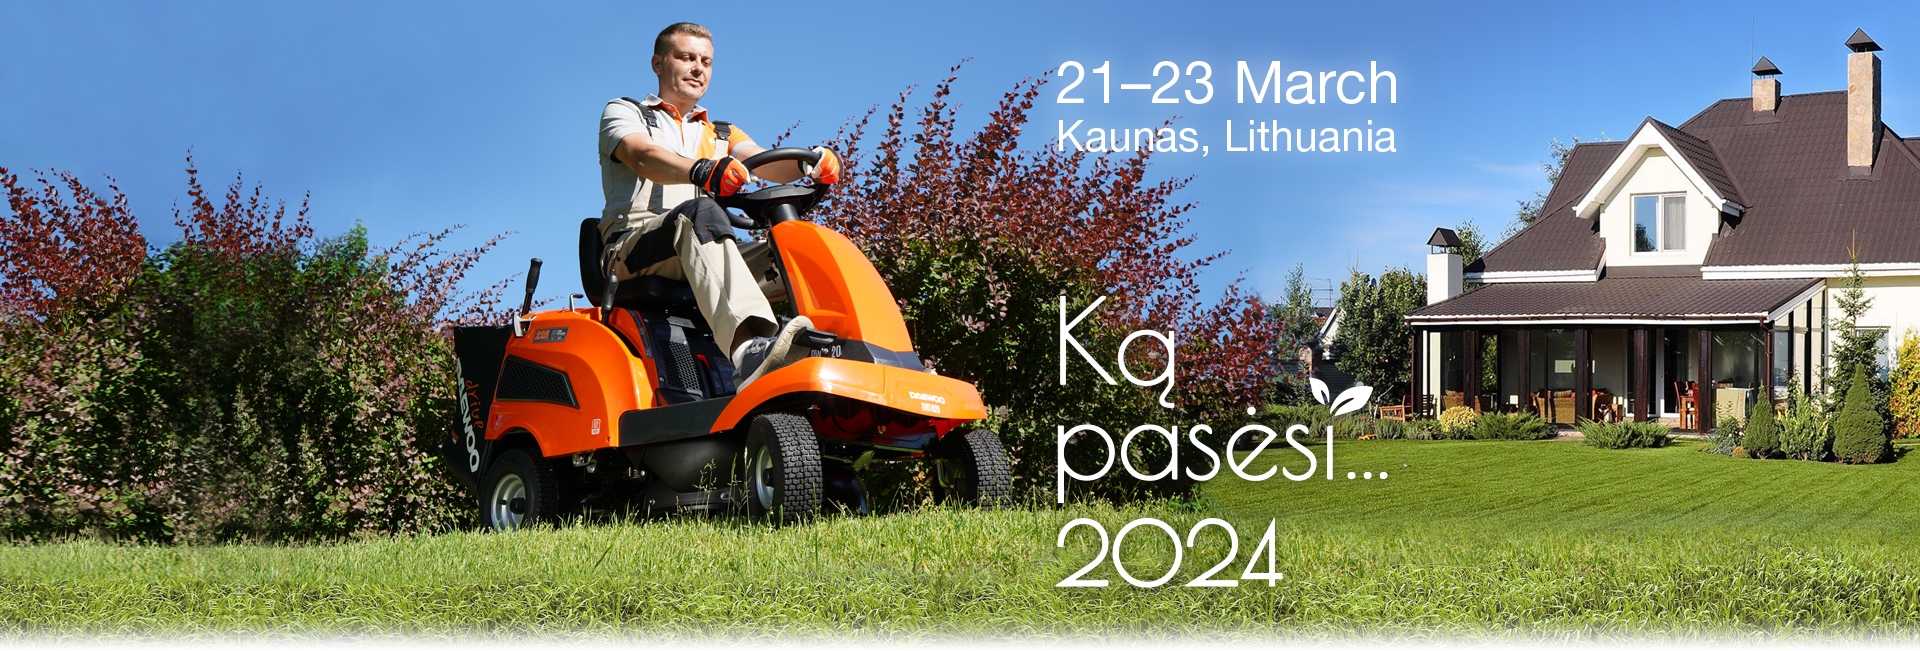 March 21-23, 2024 Kaunas. Lithuania